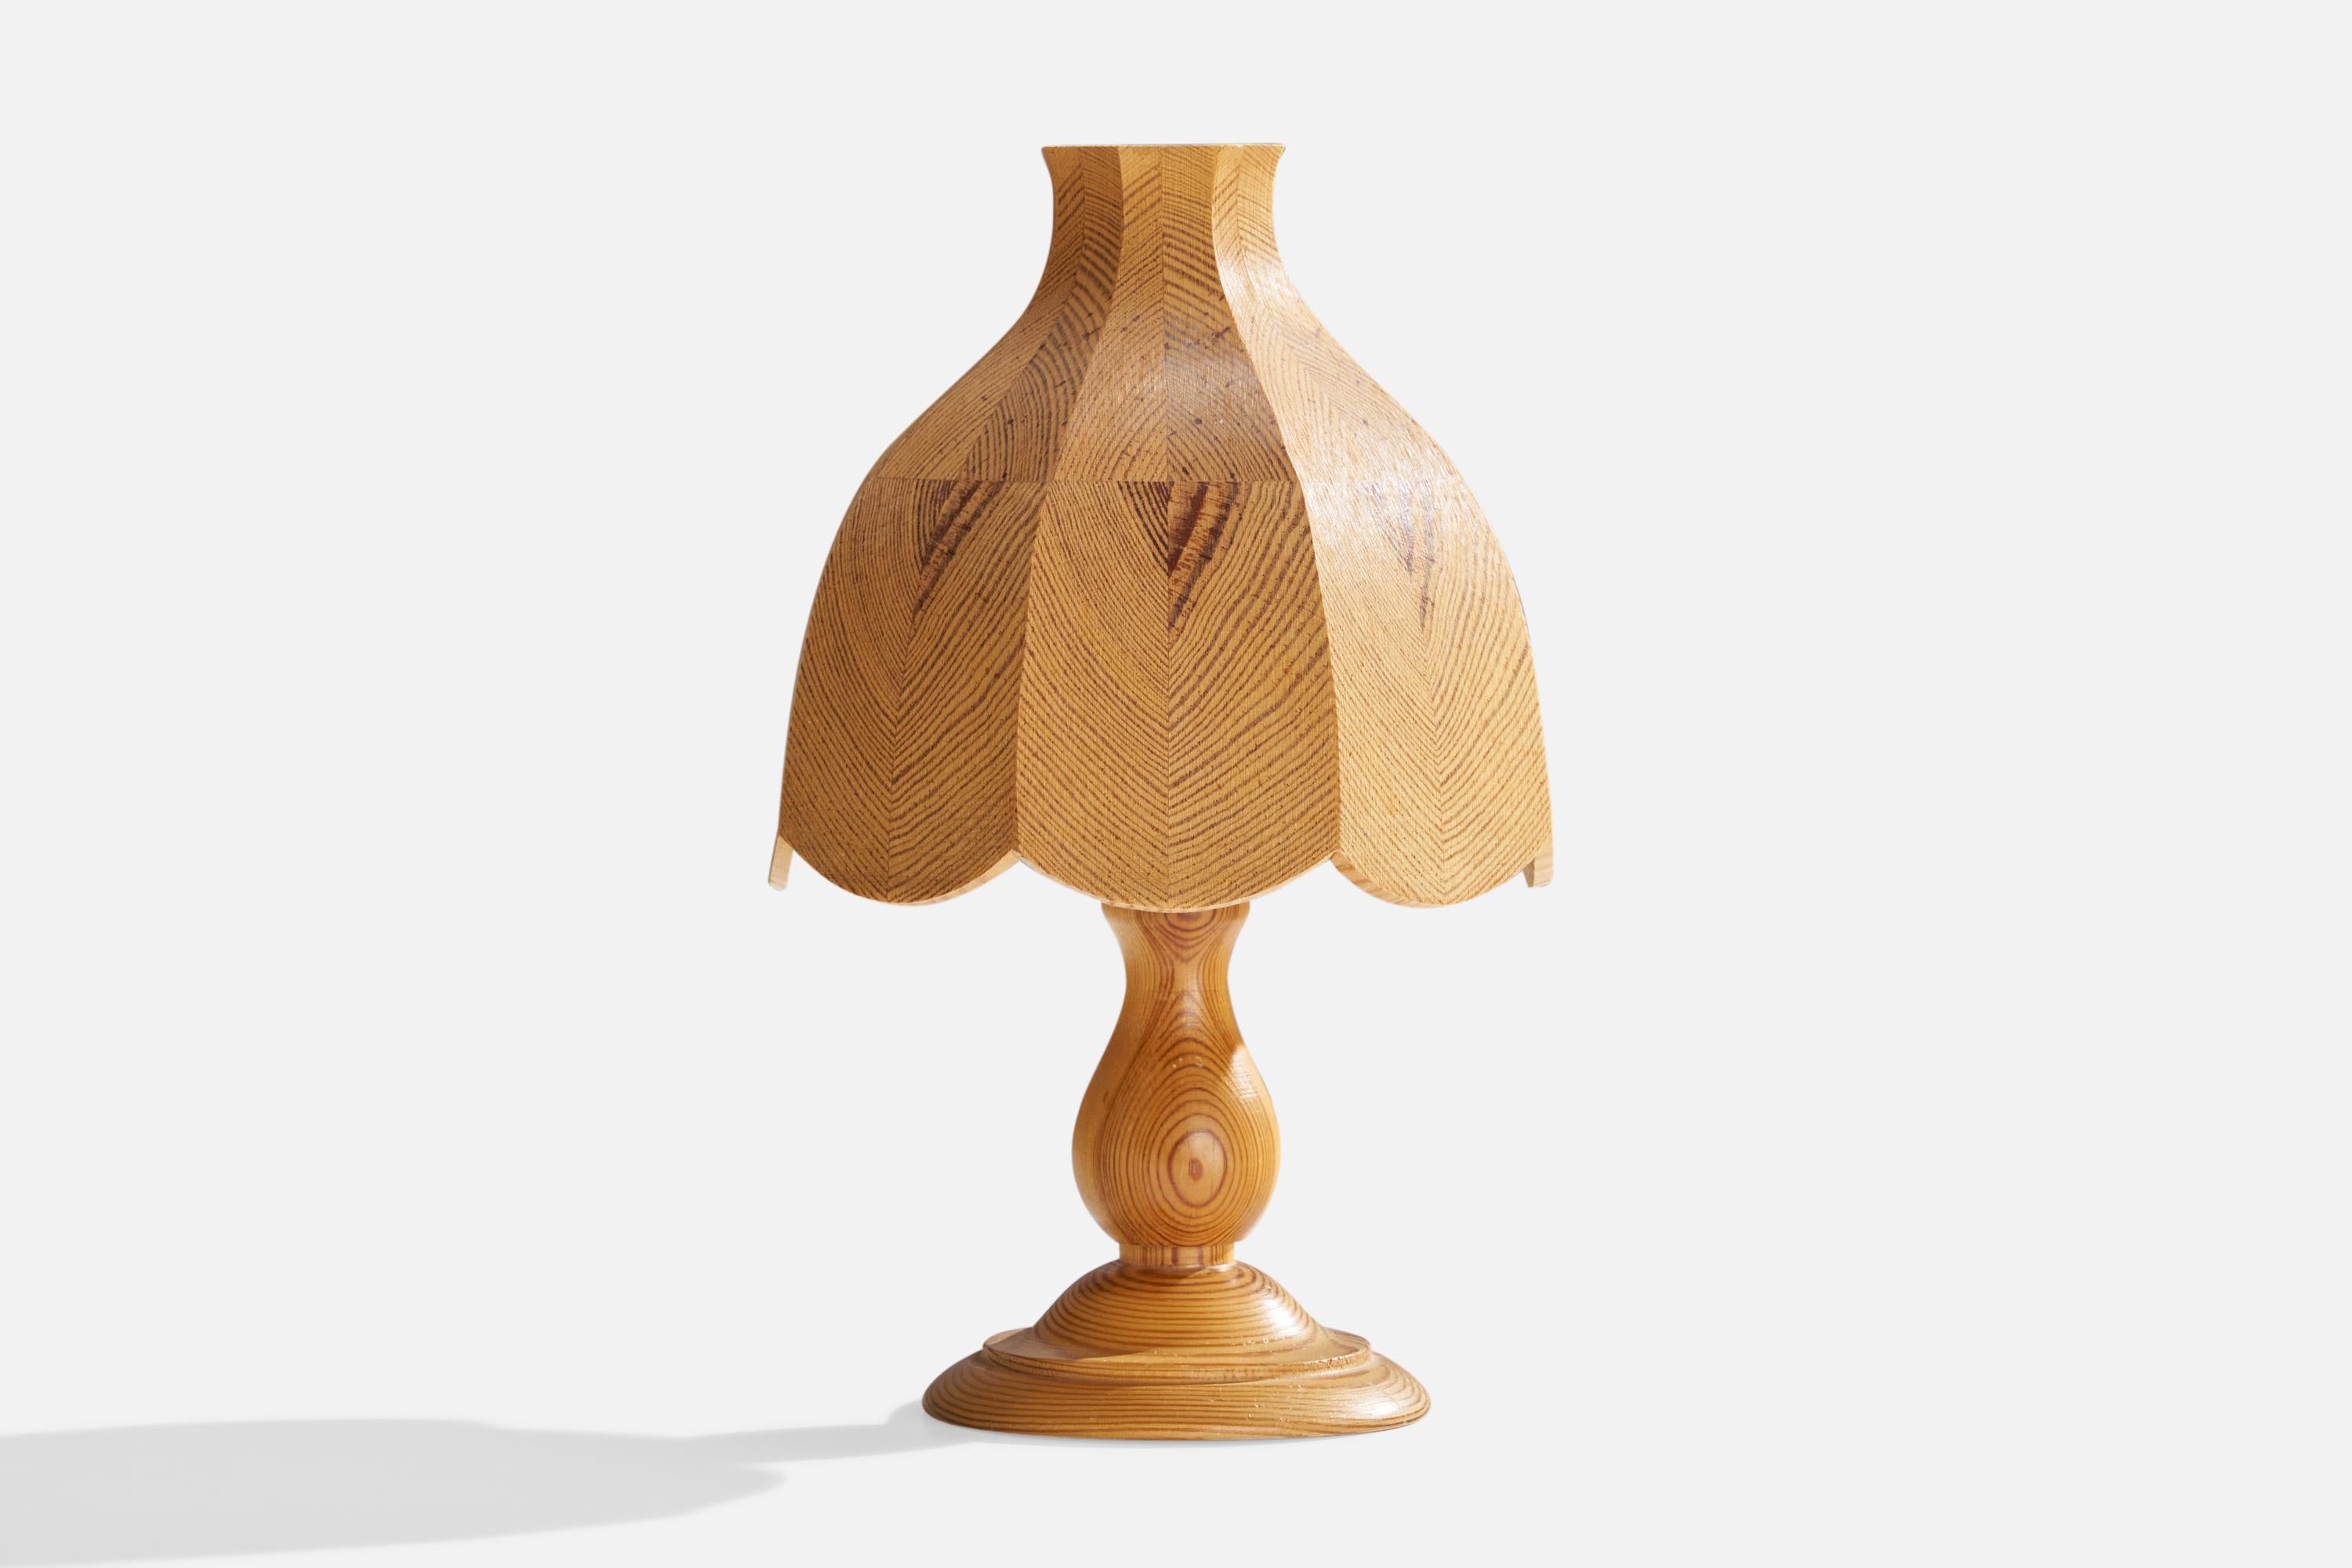 Lampe de table en pin produite par Candela, Suède, c. années 1980.

Dimensions globales (pouces) : 10.5